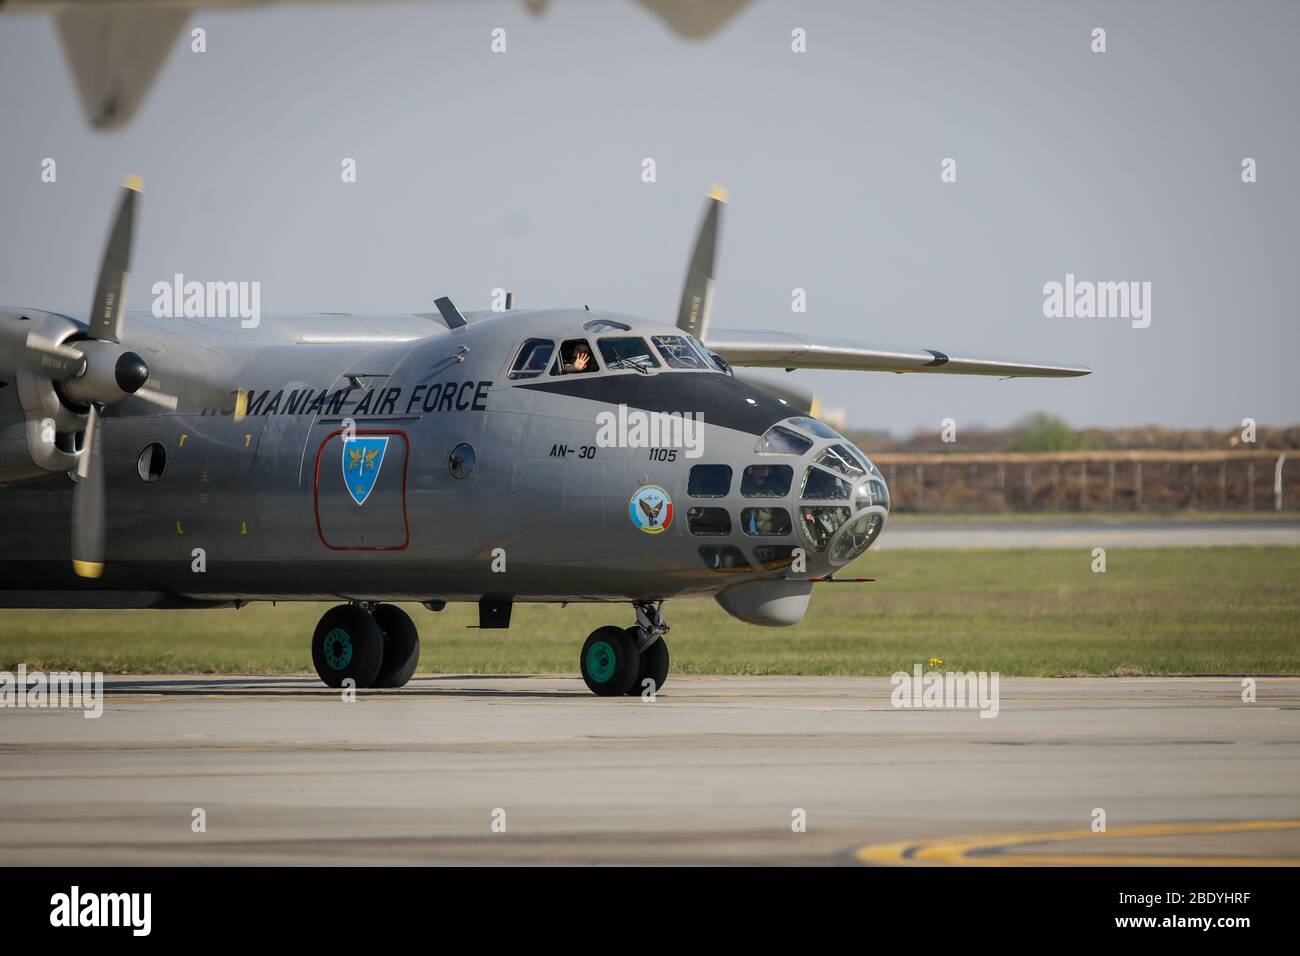 Otopeni, Roumanie - 9 avril 2020: Antonov an-30 avion militaire de l'armée de l'air roumaine à l'aéroport international Henri Coanda. Banque D'Images